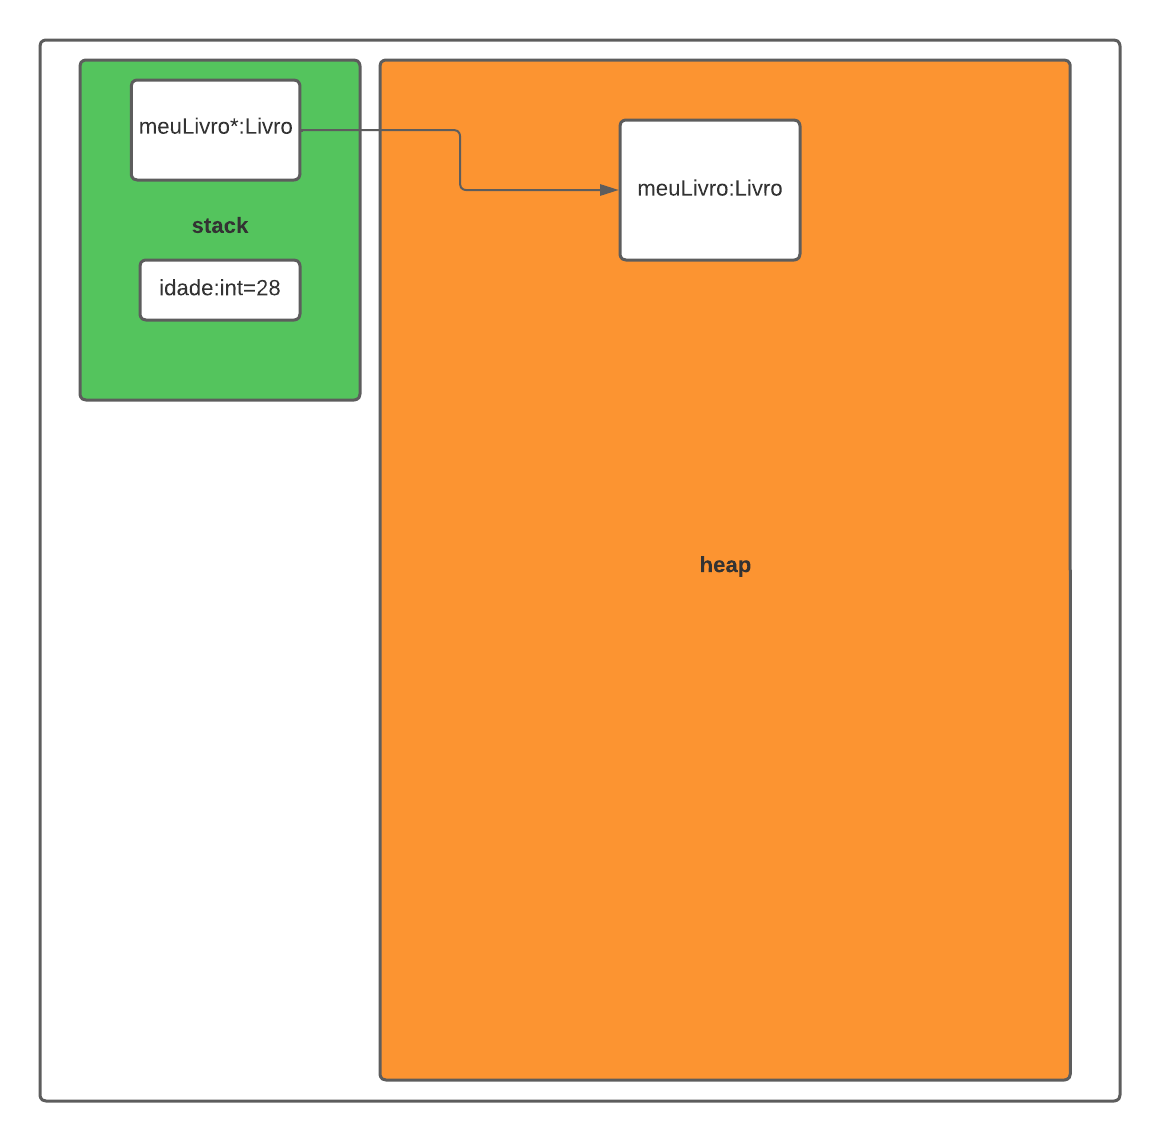 Na imagem é apresentado um retângulo na cor verde representando a memória stack e em seu interior um retângulo menor em branco com a definição da variável idade do tipo `int` com o valor de 28 e um outro retângulo com a definição de um ponteiro do tipo Livro apontando para o retângulo maior na cor laranja representando a memória heap definindo um objeto meuLivro do tipo Livro.